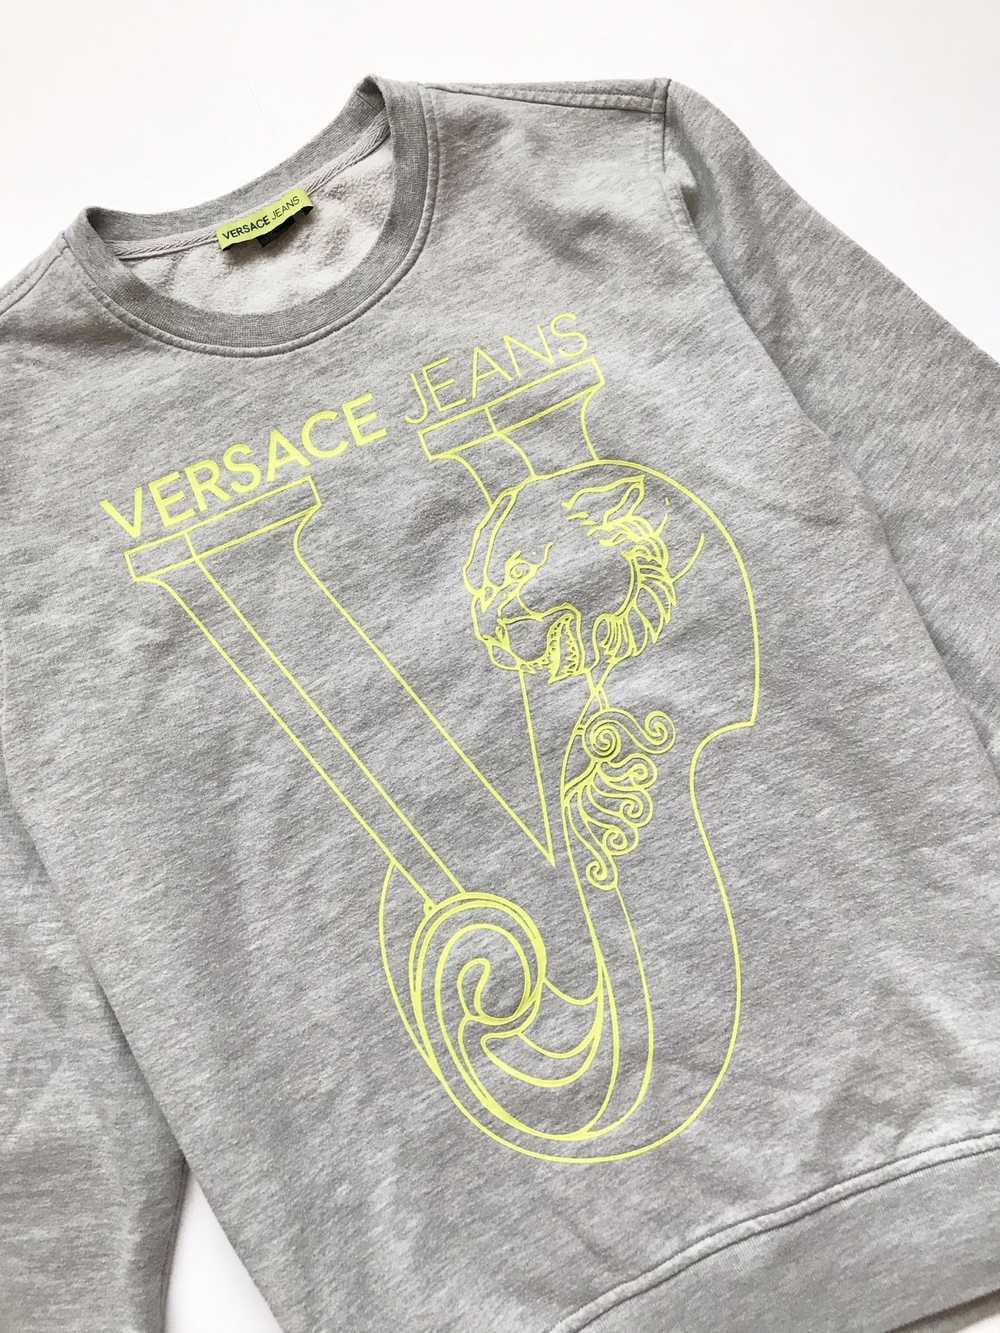 Versace Versace jeans printed sweatshirt - image 2